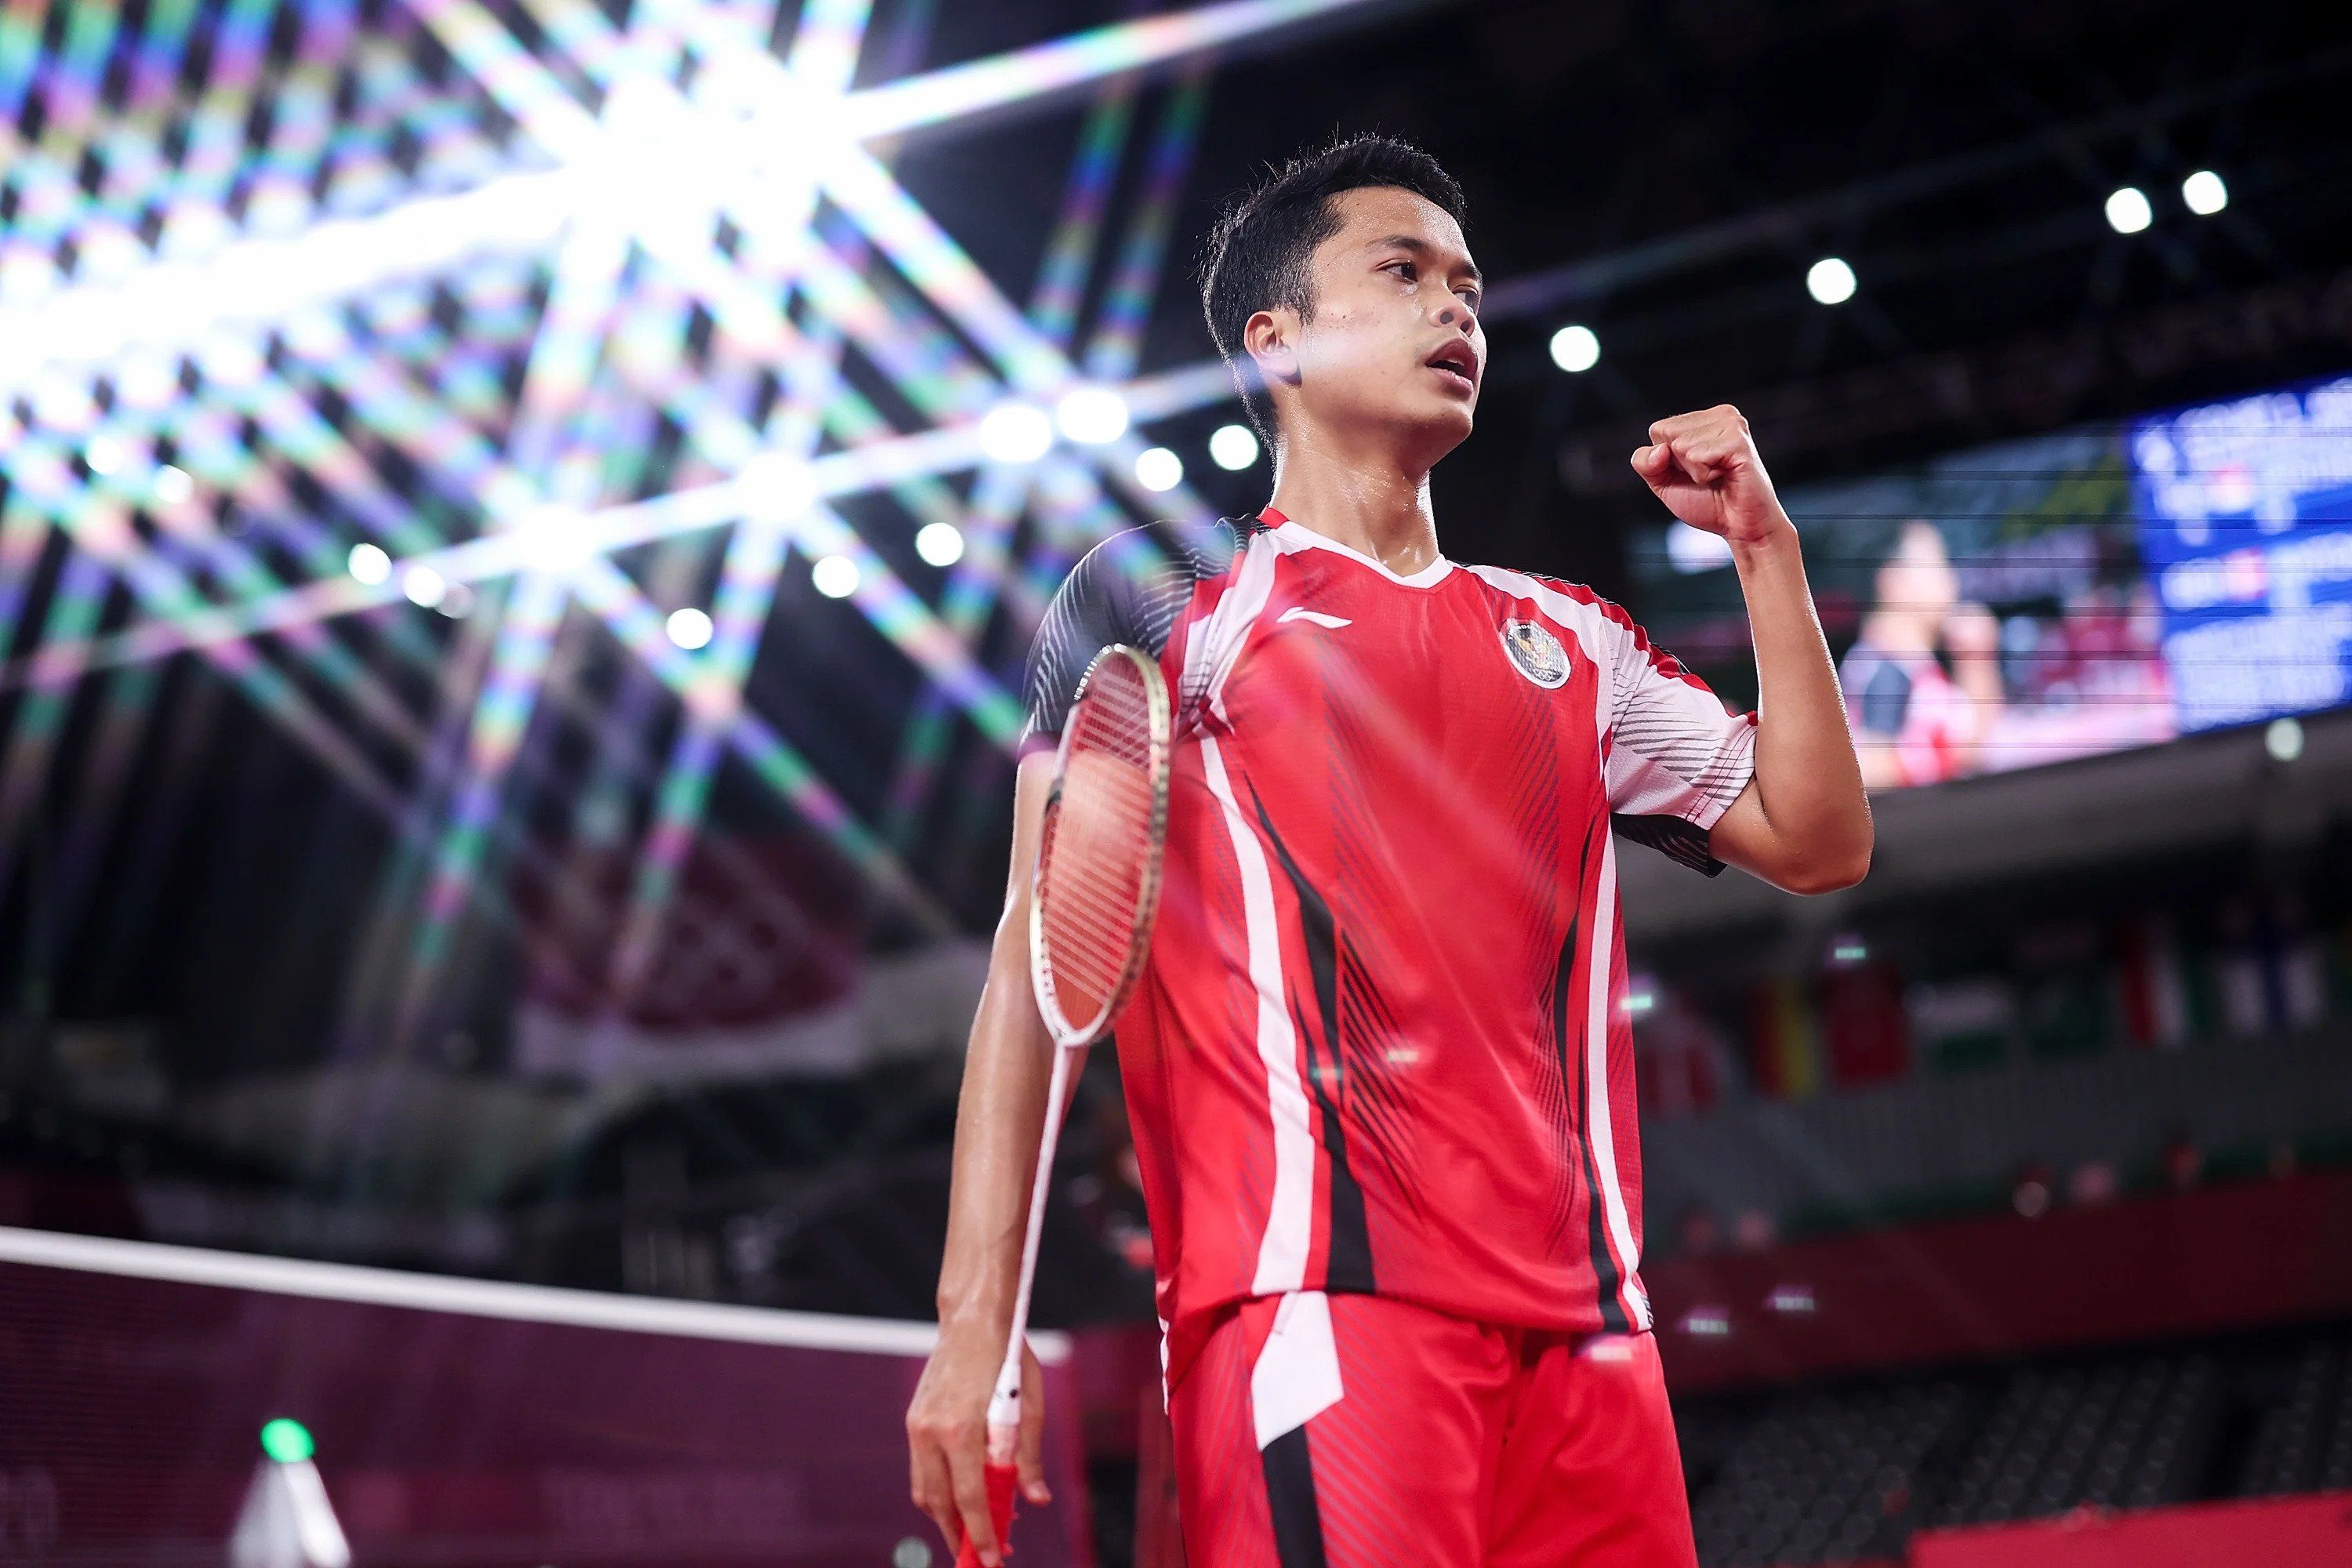 Nonton Siaran Ulang Anthony Ginting Olimpiade Tokyo 2020, Tunggal Putra Persembahkan Perunggu untuk Indonesia